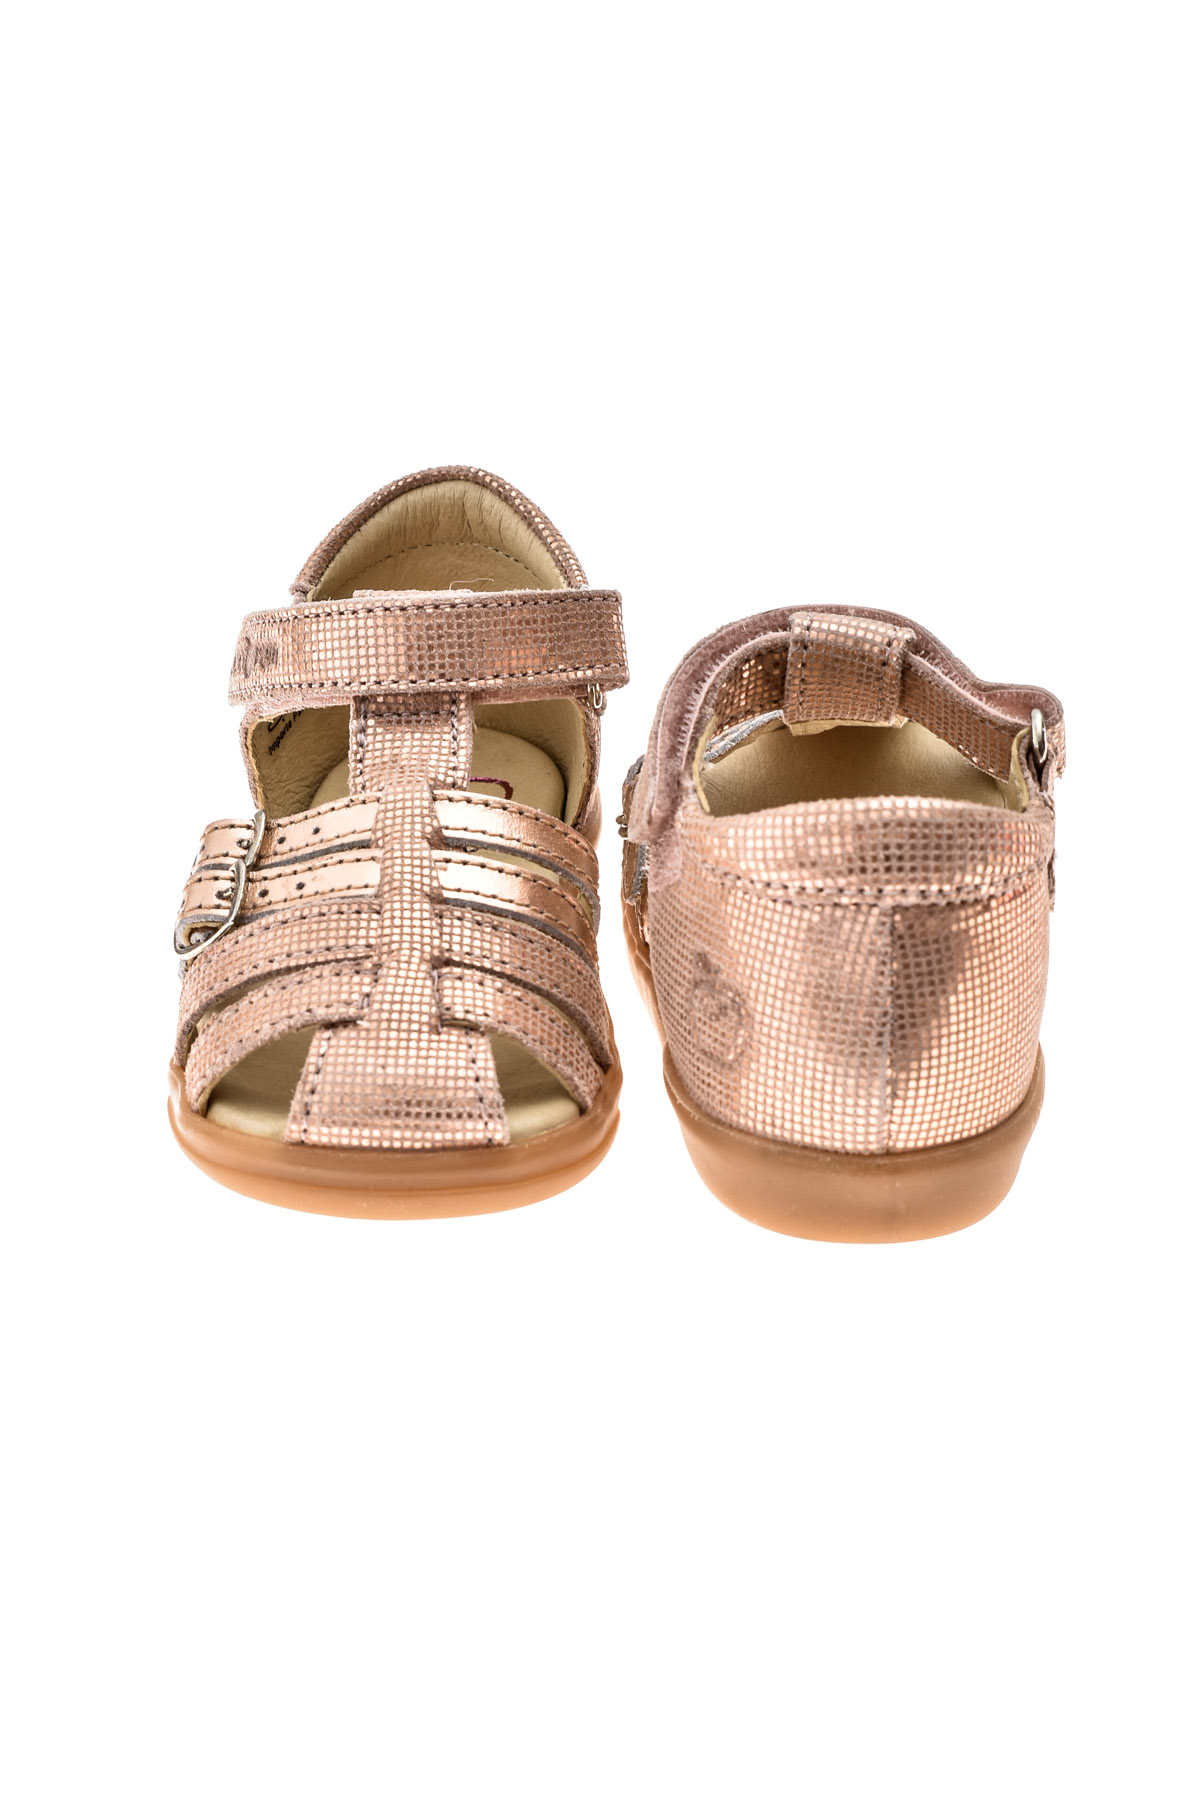 Sandals for baby girls - SHOO POM - 2